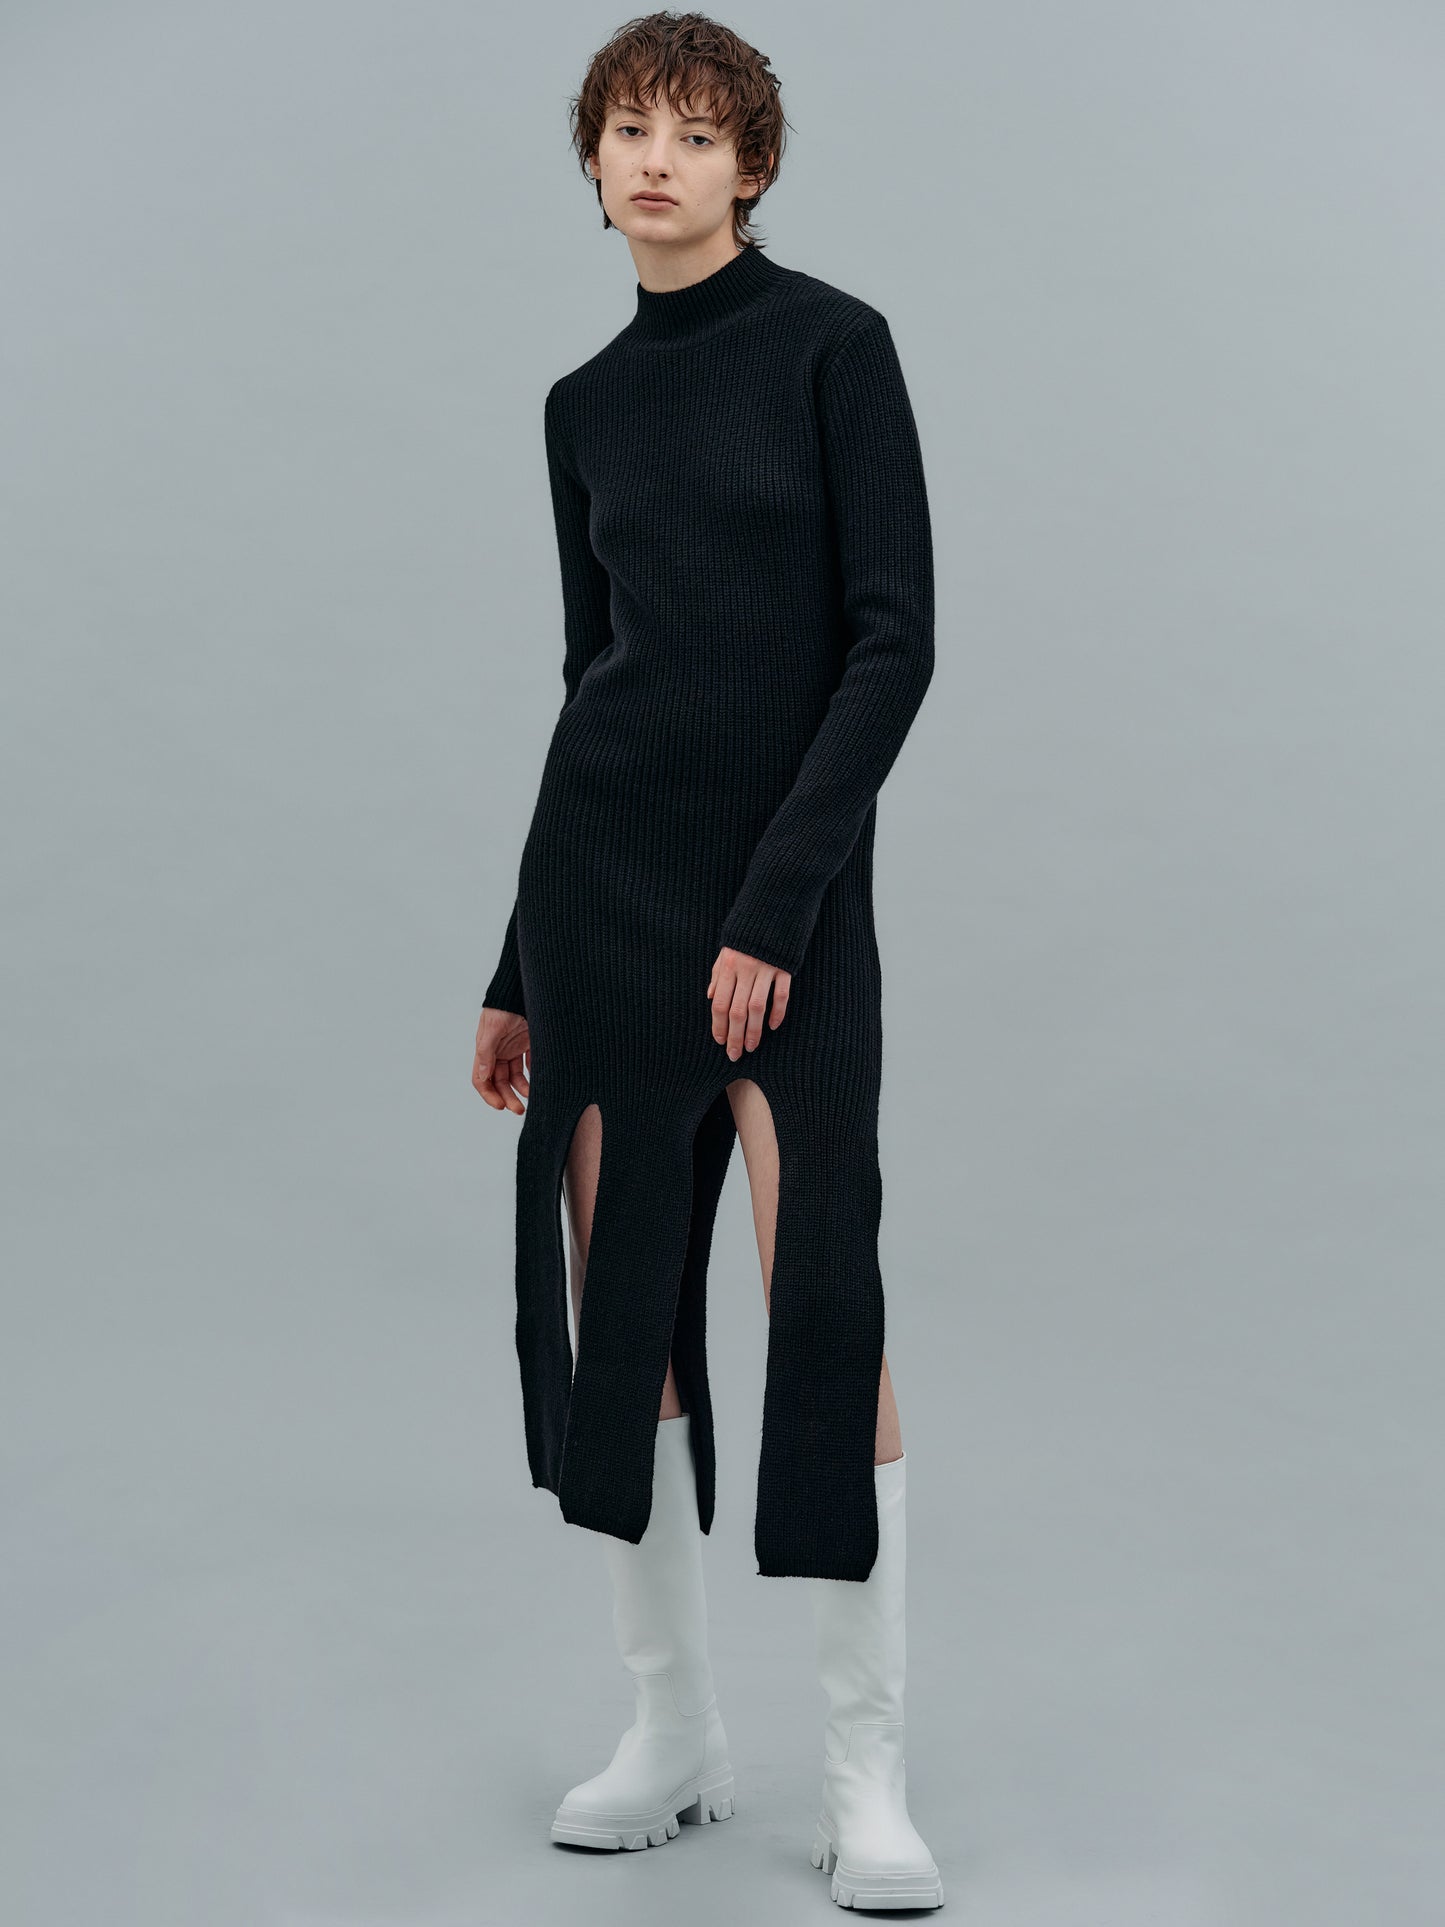 Slit Cut Merino Wool Dress, Black